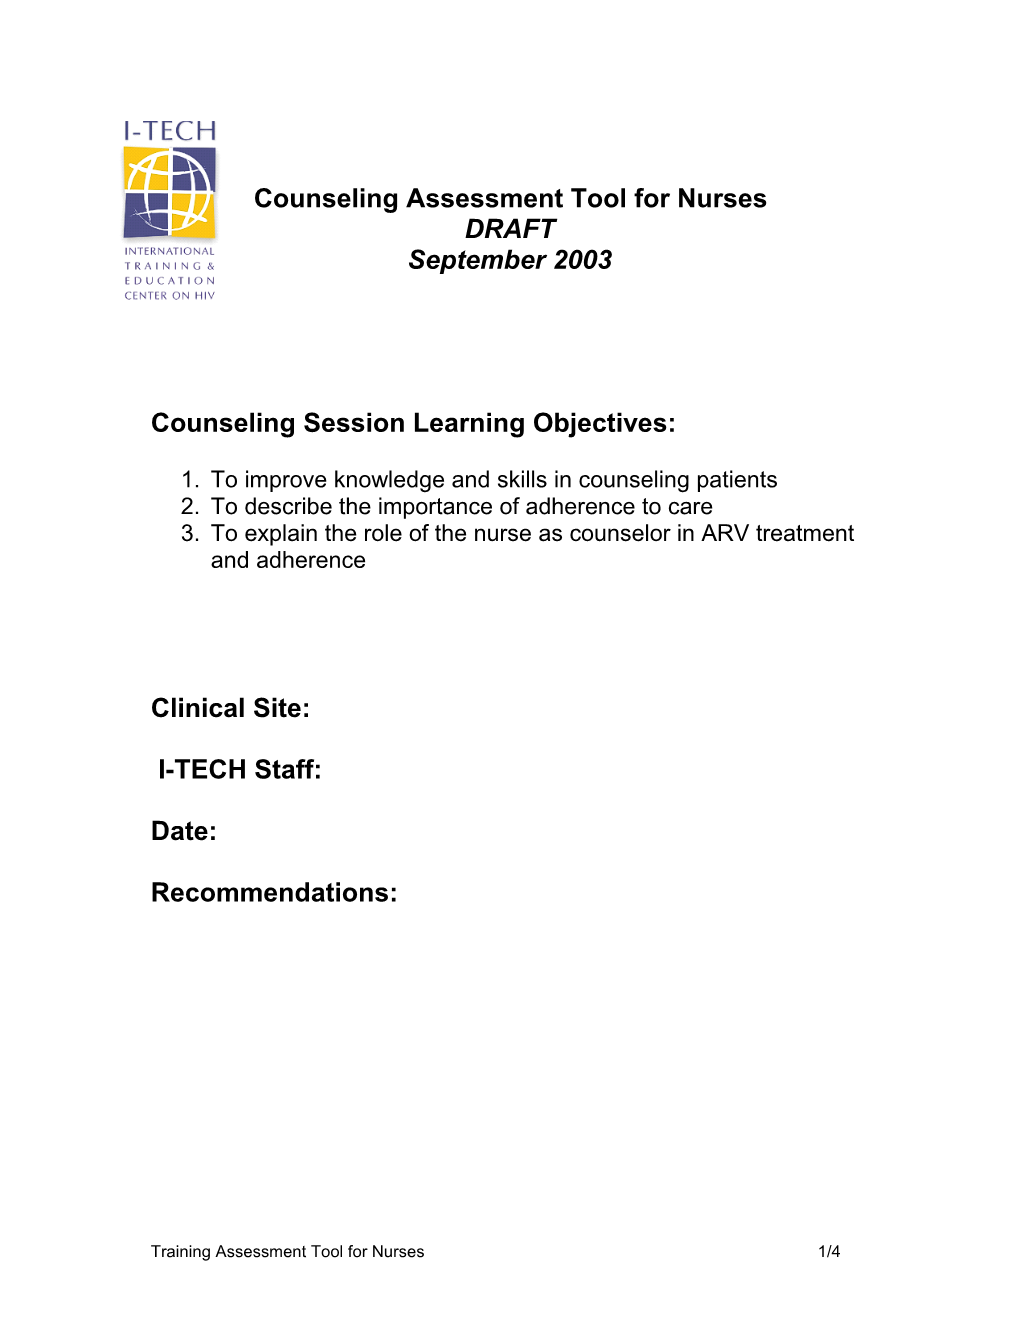 Training Implementation Assessment Tool for Nurses